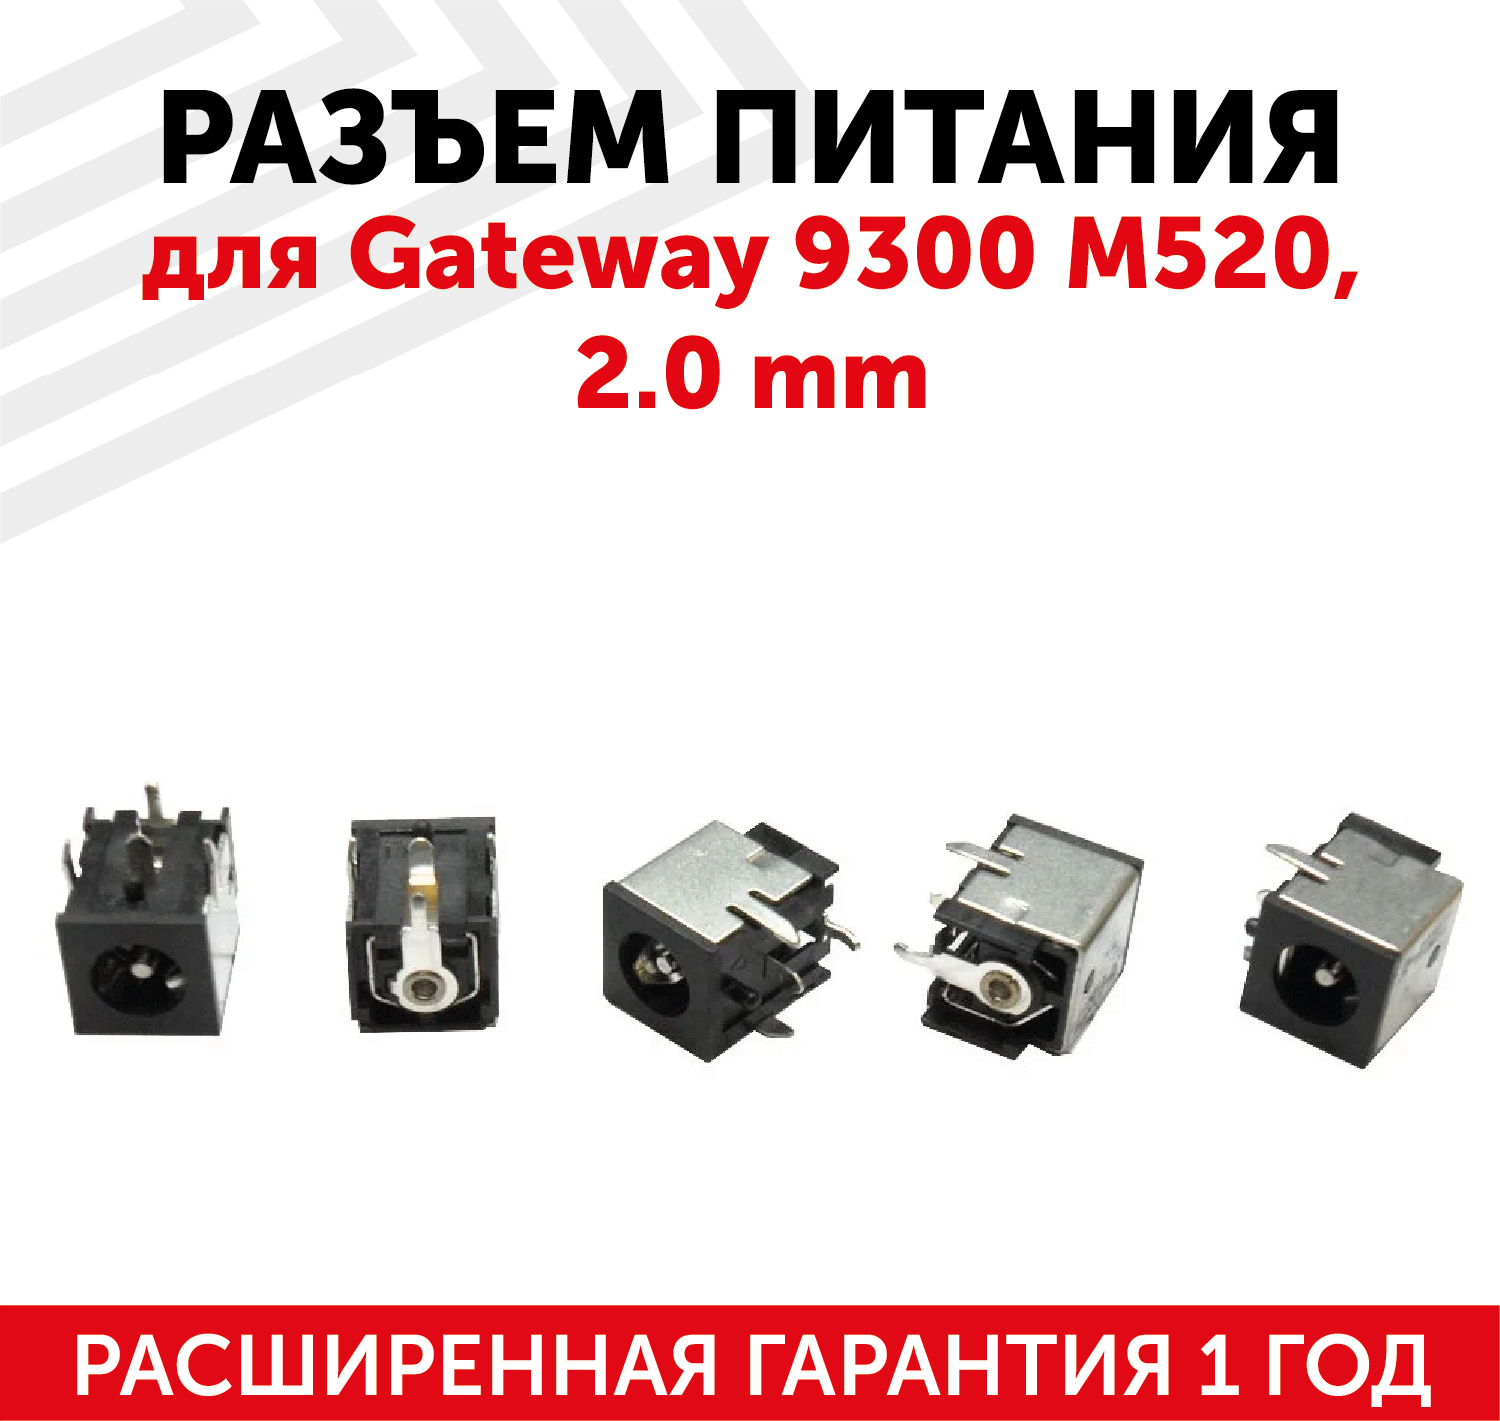 Разъем для ноутбука PJ012 Gateway 9300 M520 2.0 mm